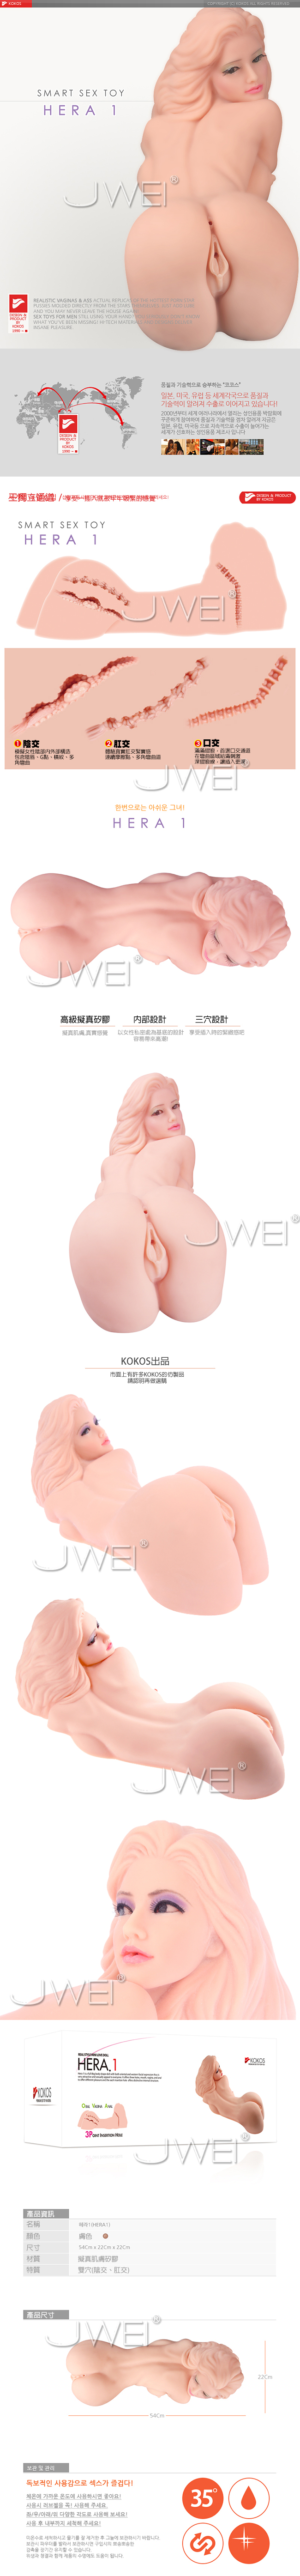 韓國KOKOS‧Real Doll 系列-7.6KG重量級大型三穴自慰器- Hera 1